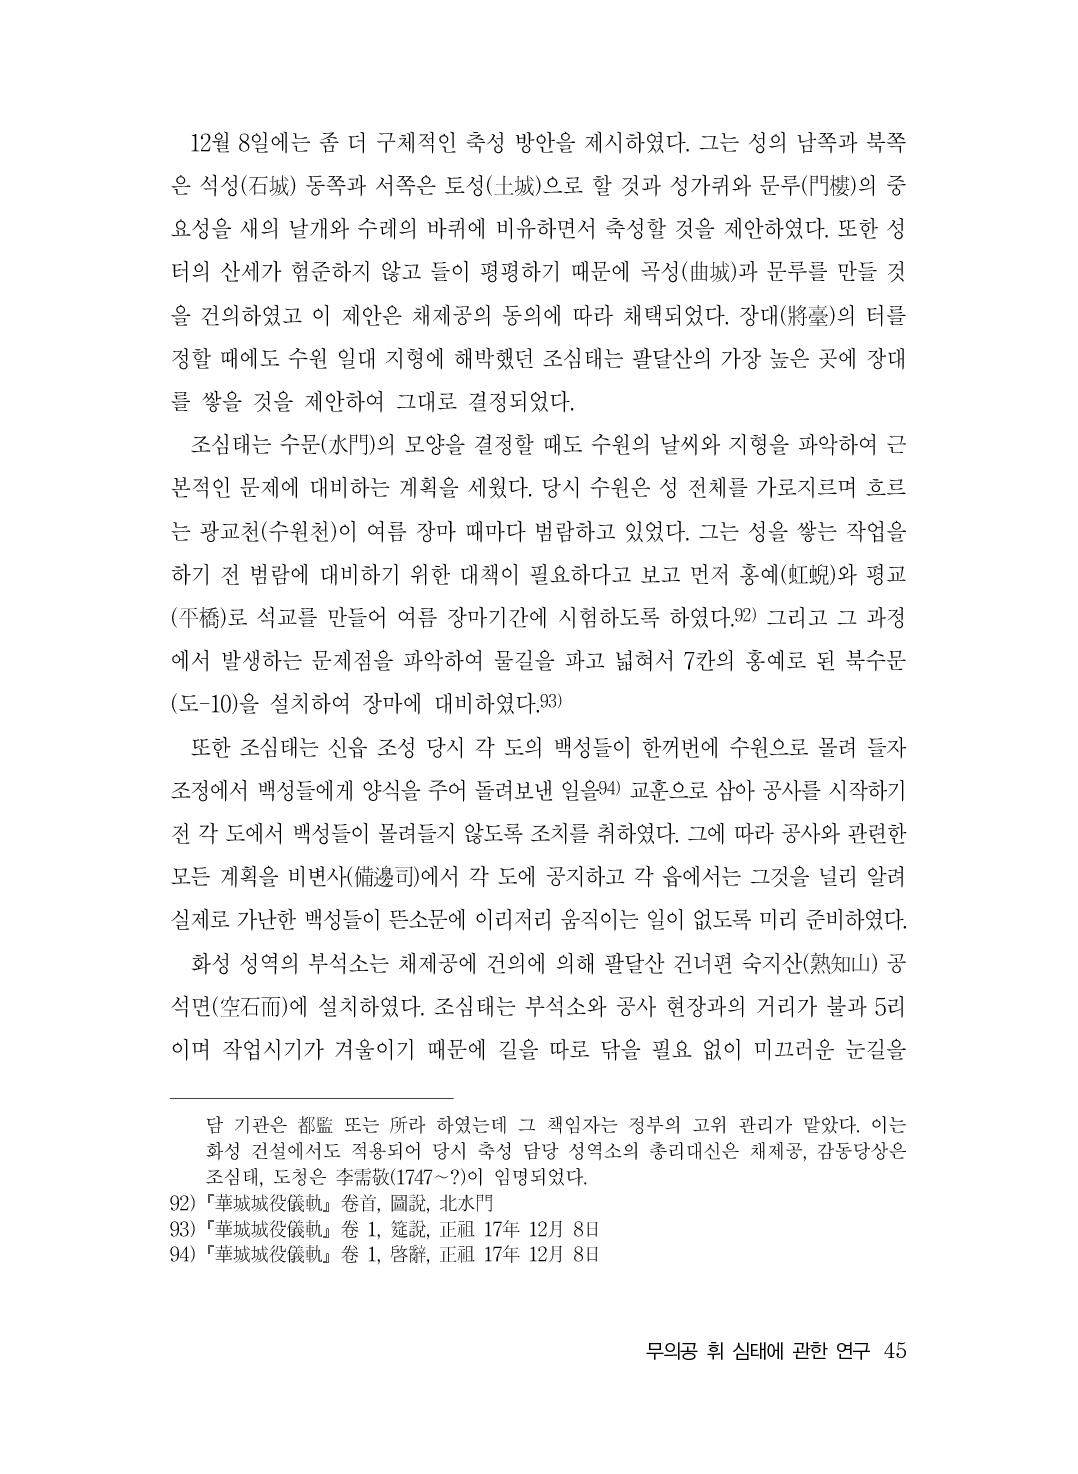 (전체) 송산종보(27호)(최종)_46.jpg